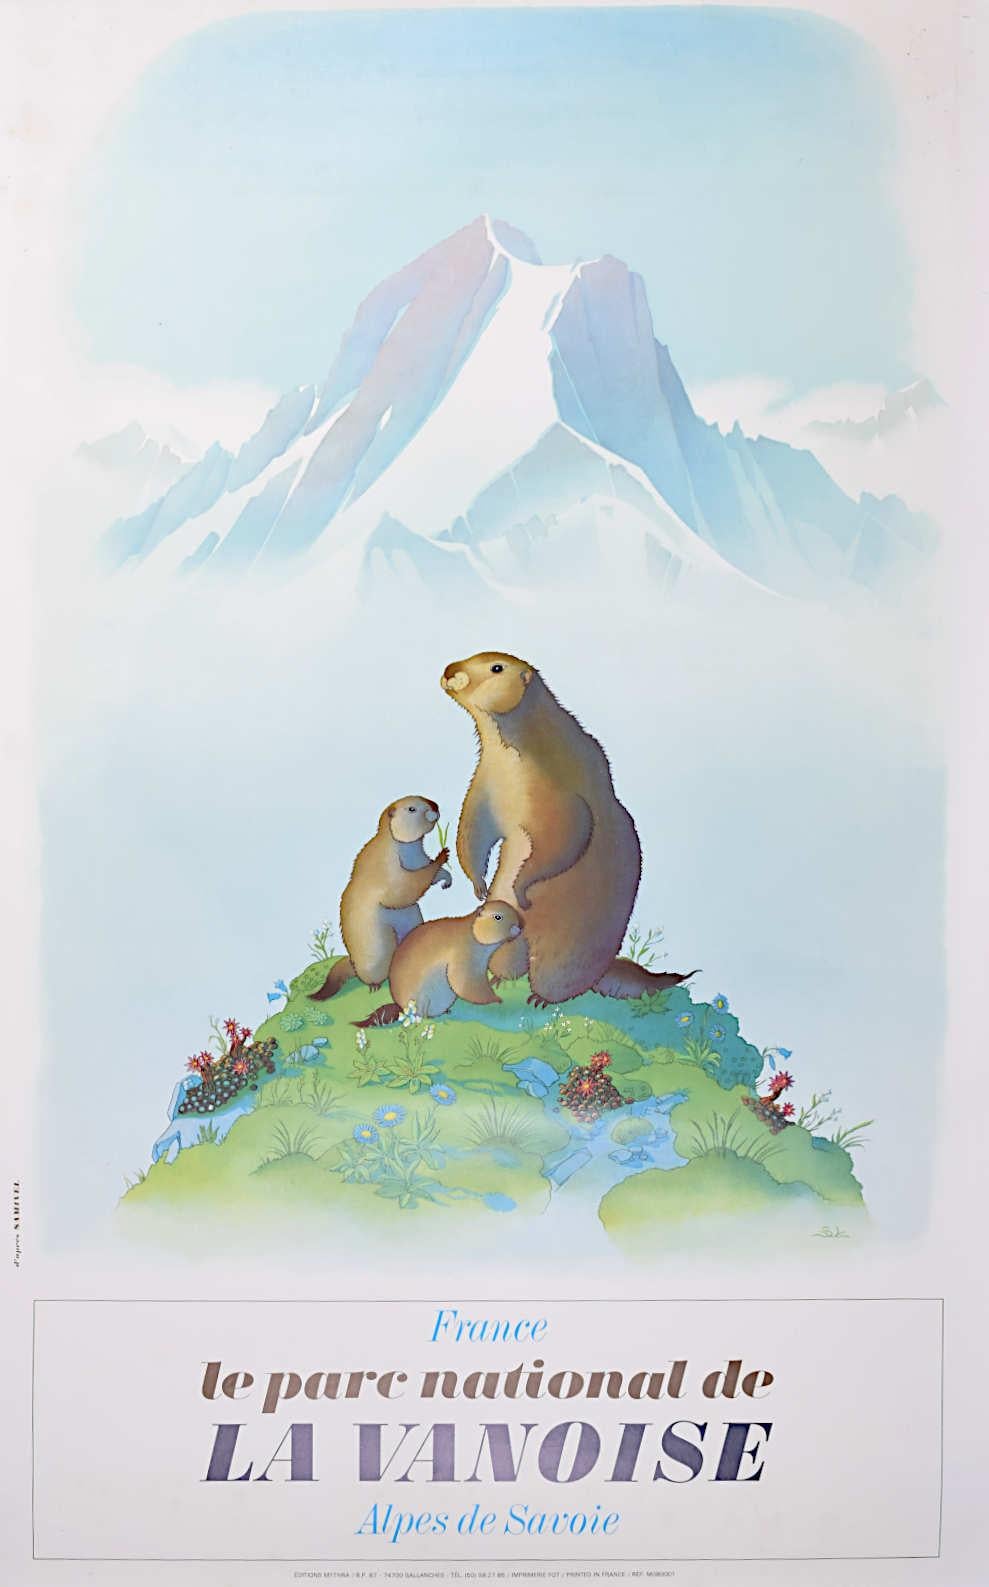 Samivel - Original Ski Poster: Le Parc Nationalle de la Vanoise Savoie Marmot - Print by Samivel Paul Gayet-Tancrède 